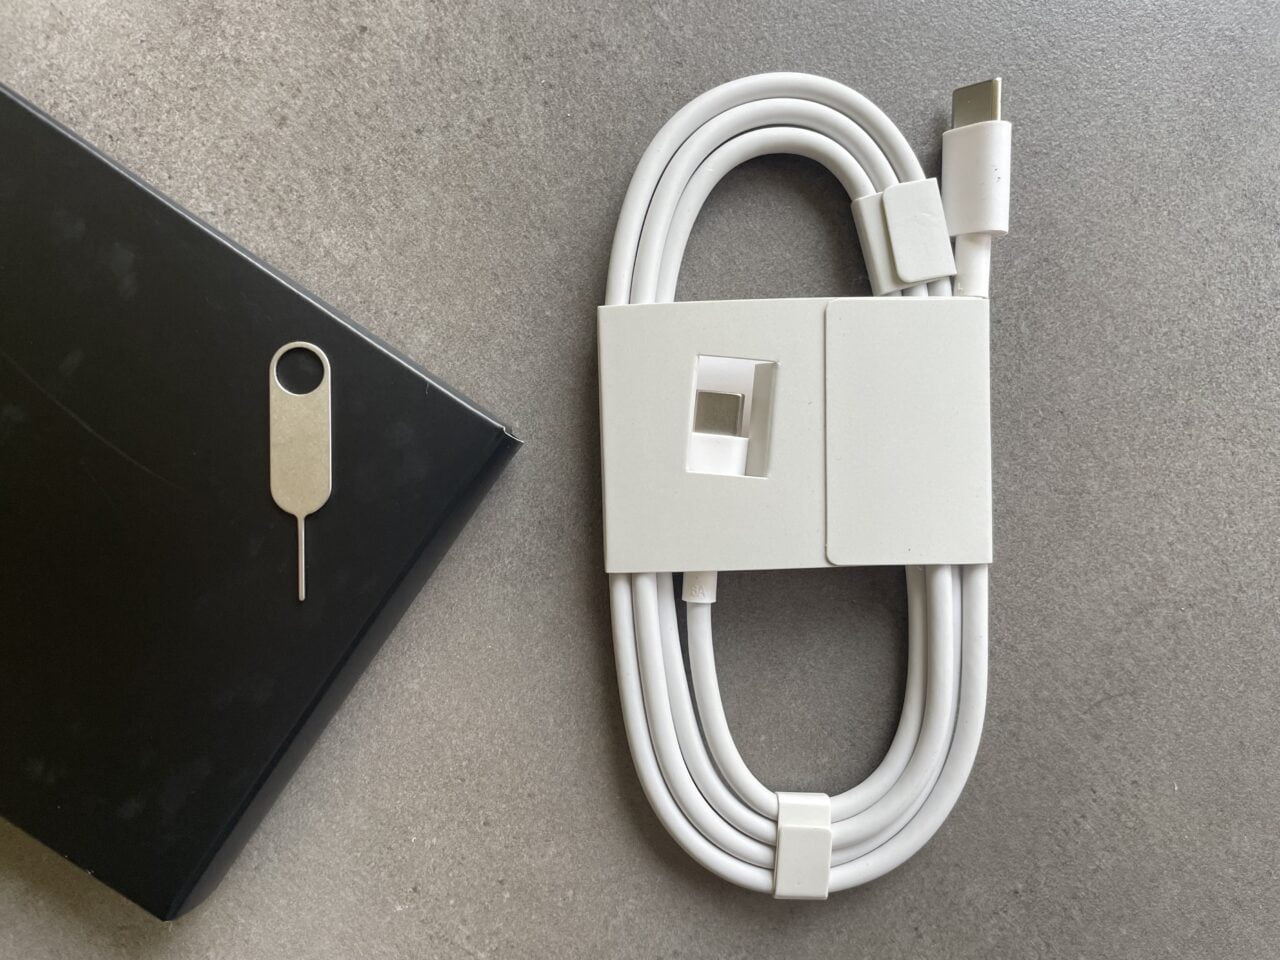 Biały przewód USB-C z organizatorem kabli i szpilką do wyciągania tacki SIM, obok czarne opakowanie na szarym tle.